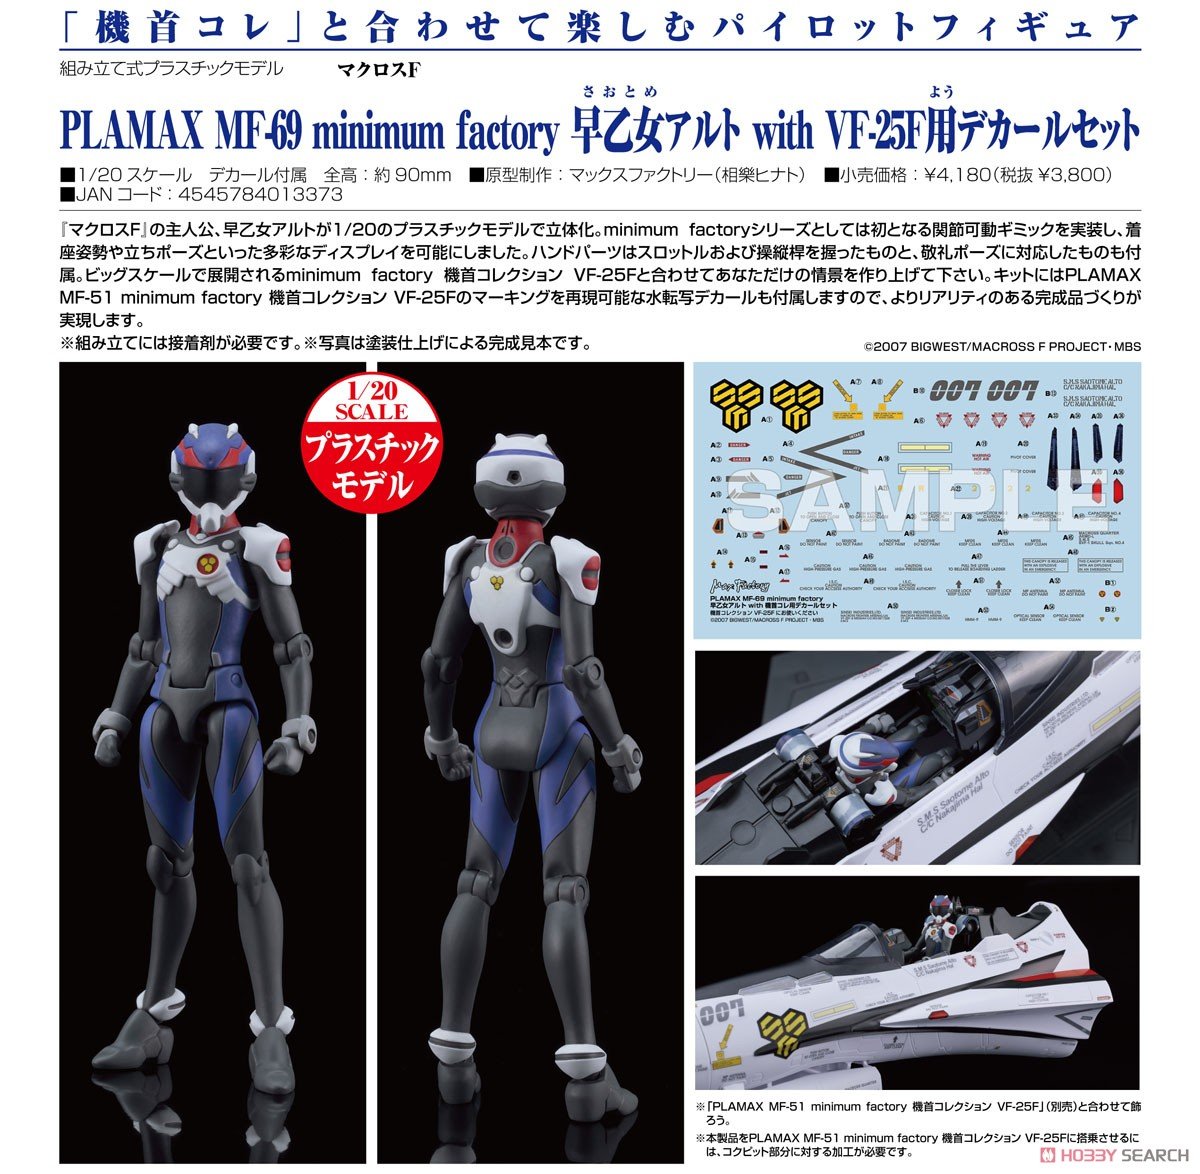 PLAMAX MF-69 minimum factory『早乙女アルト with VF-25F用デカールセット 』マクロスF プラモデル-008